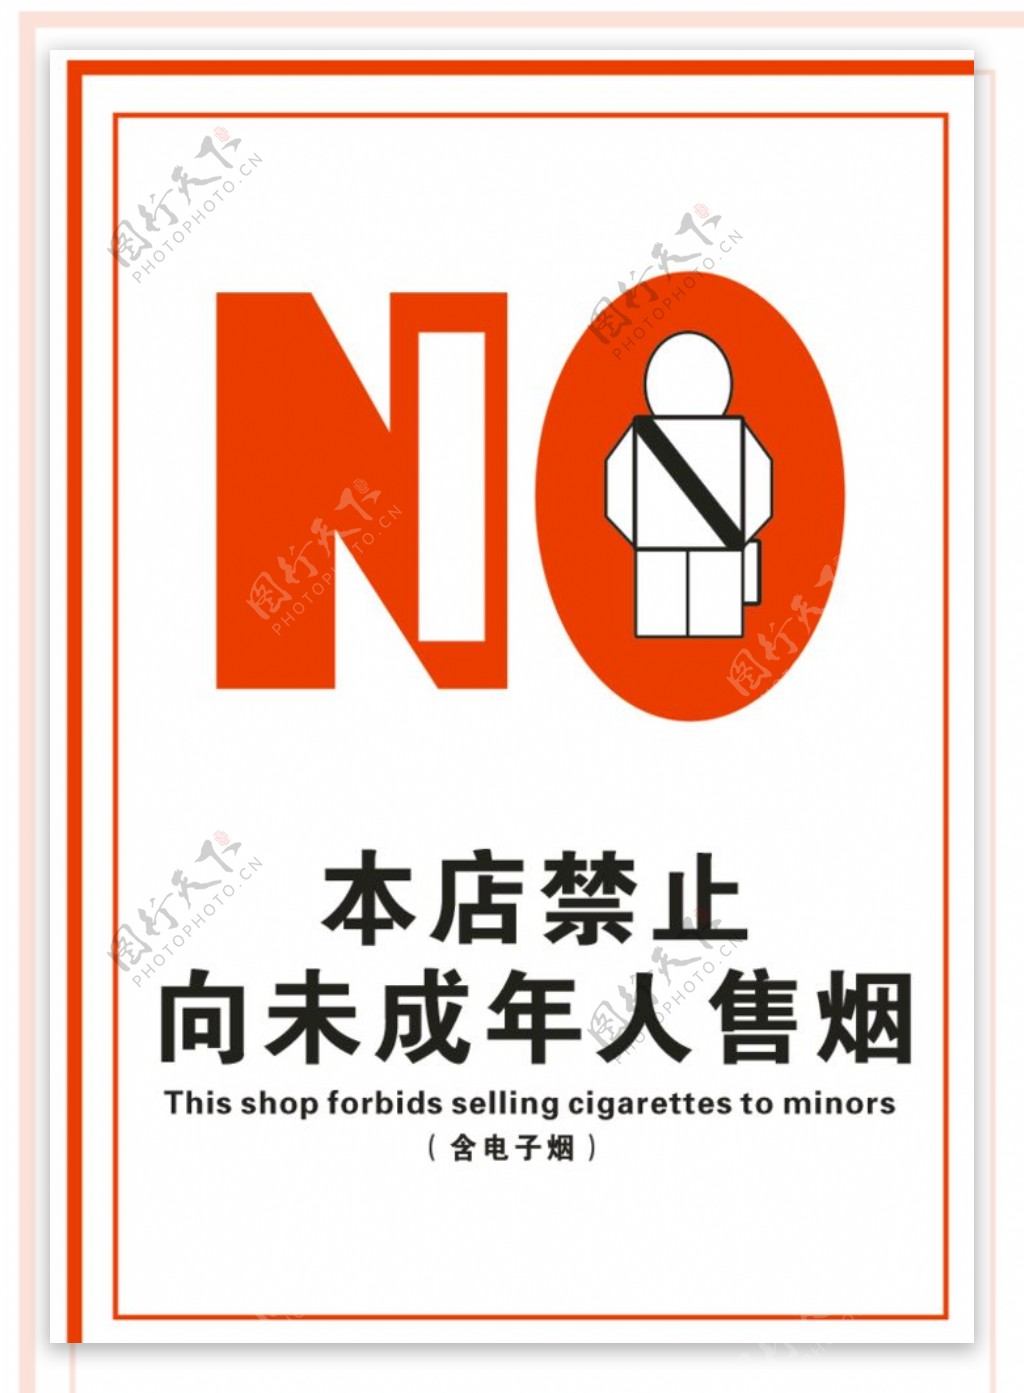 本店禁止向未成年人售烟图片